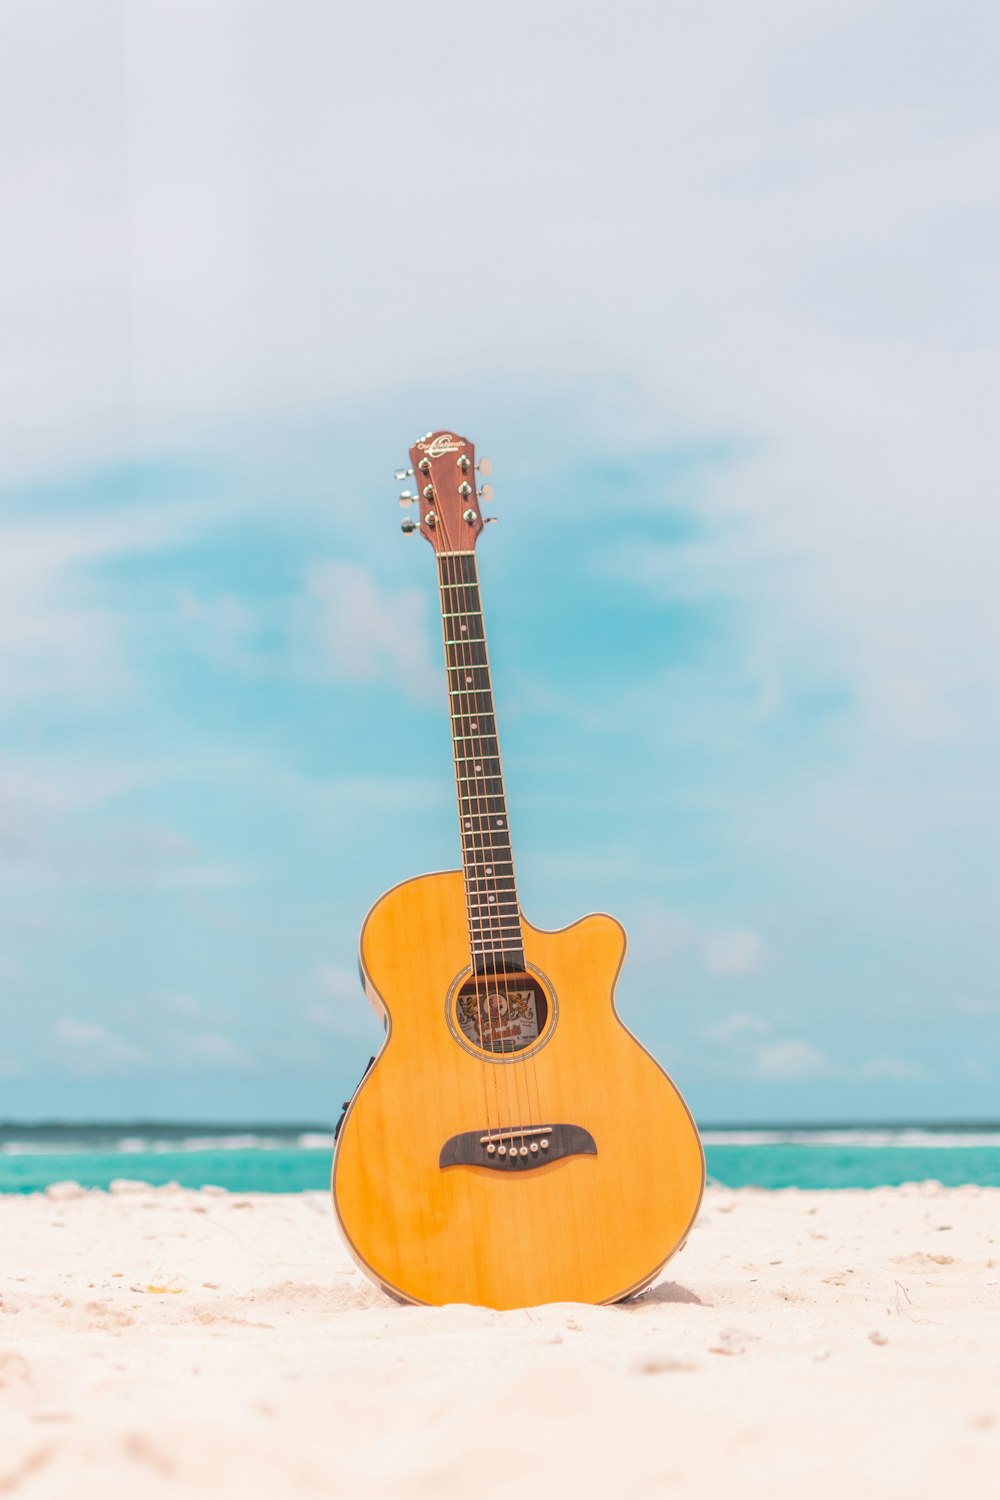 guitarra acústica marrom na areia branca durante o dia